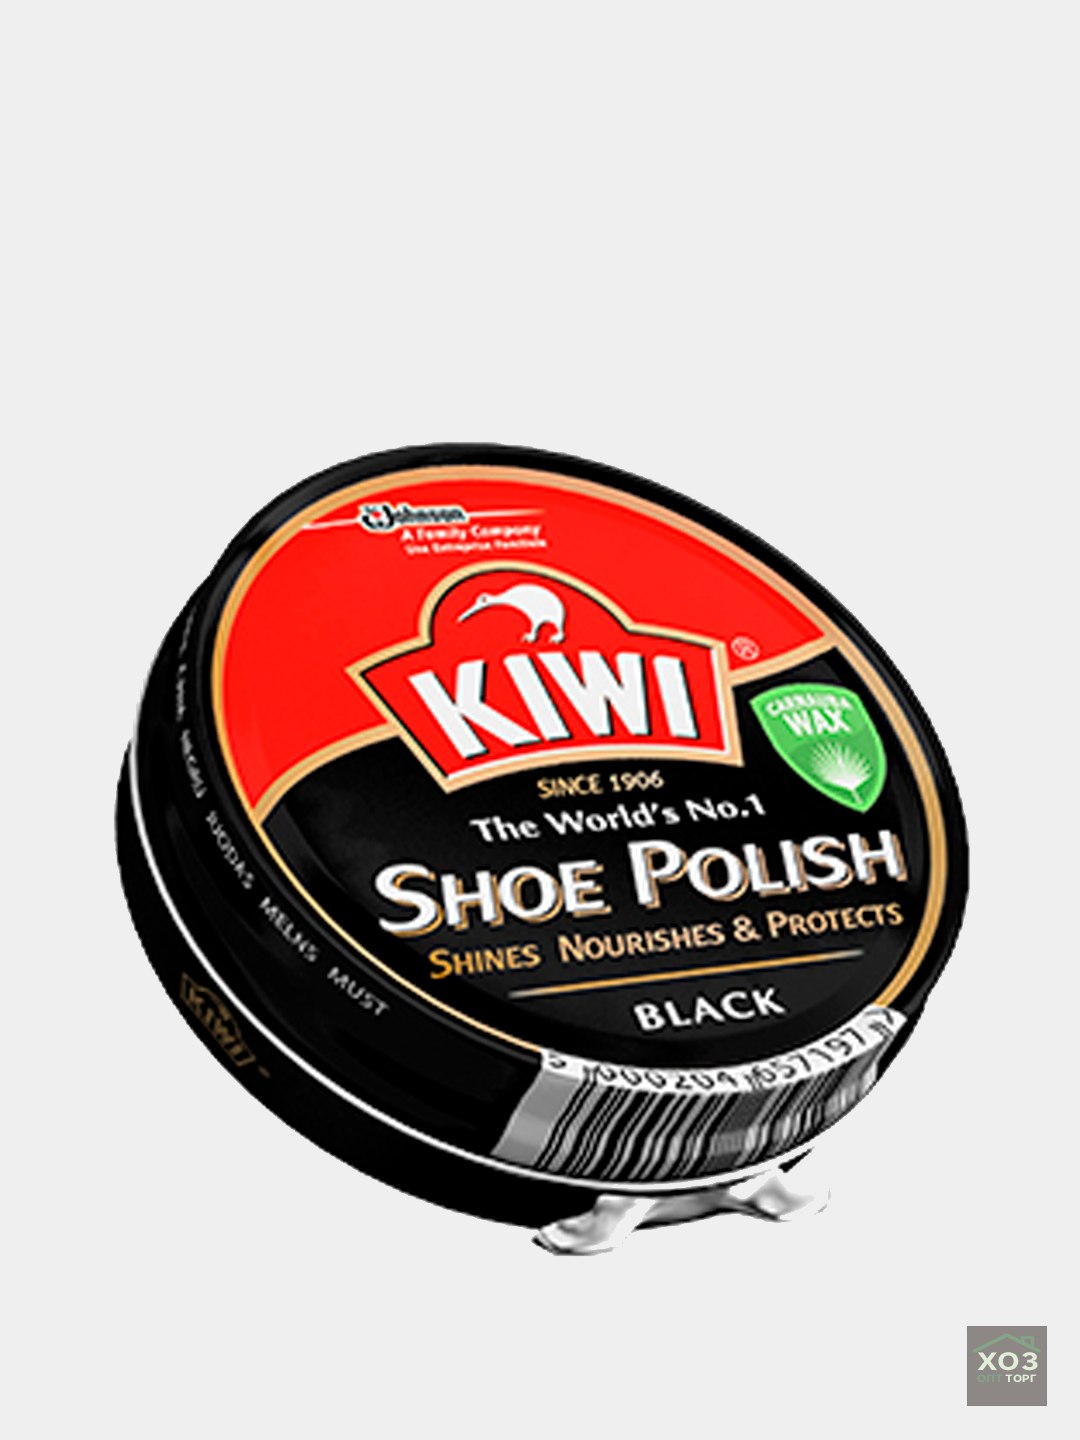 Polish black